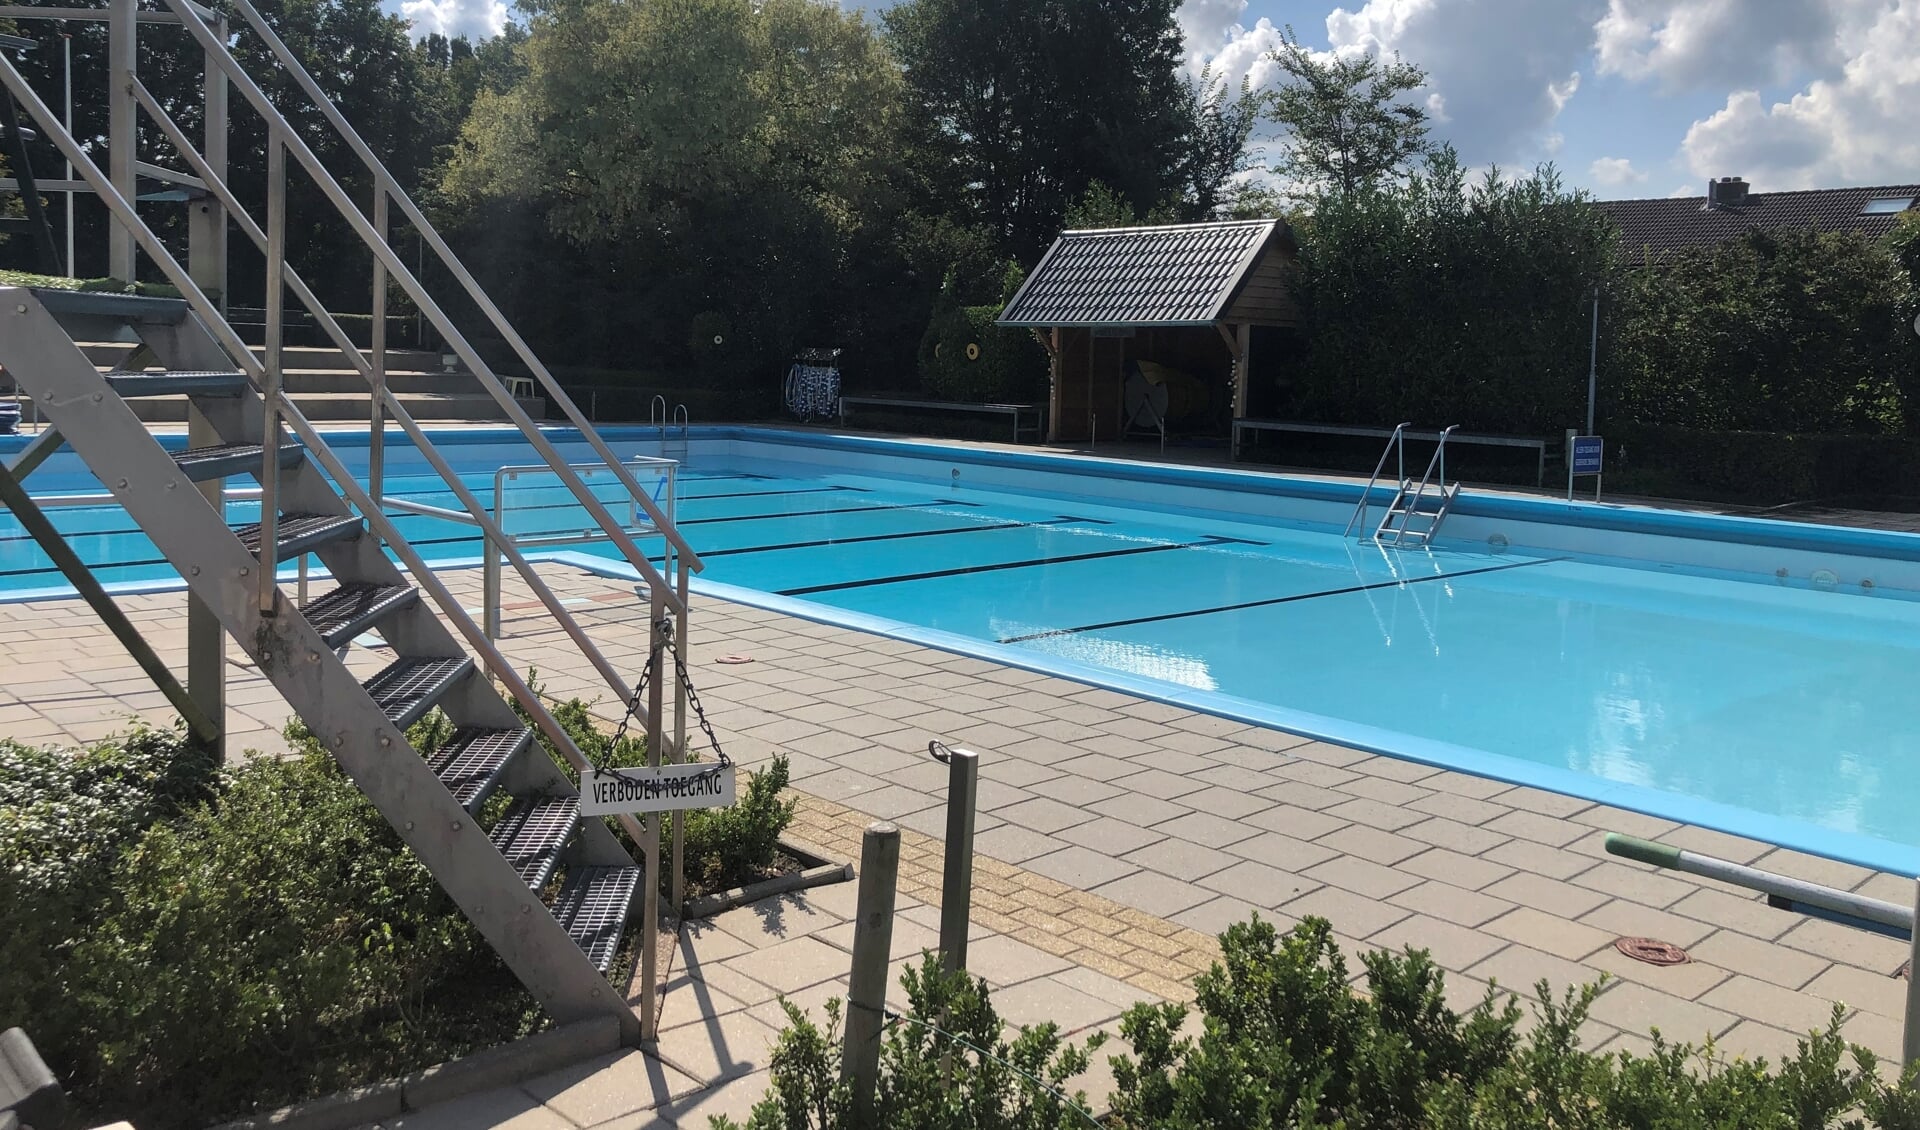 Het zwembad in Steenderen is klaar voor het nieuwe seizoen. Foto: Medewerker zwembad